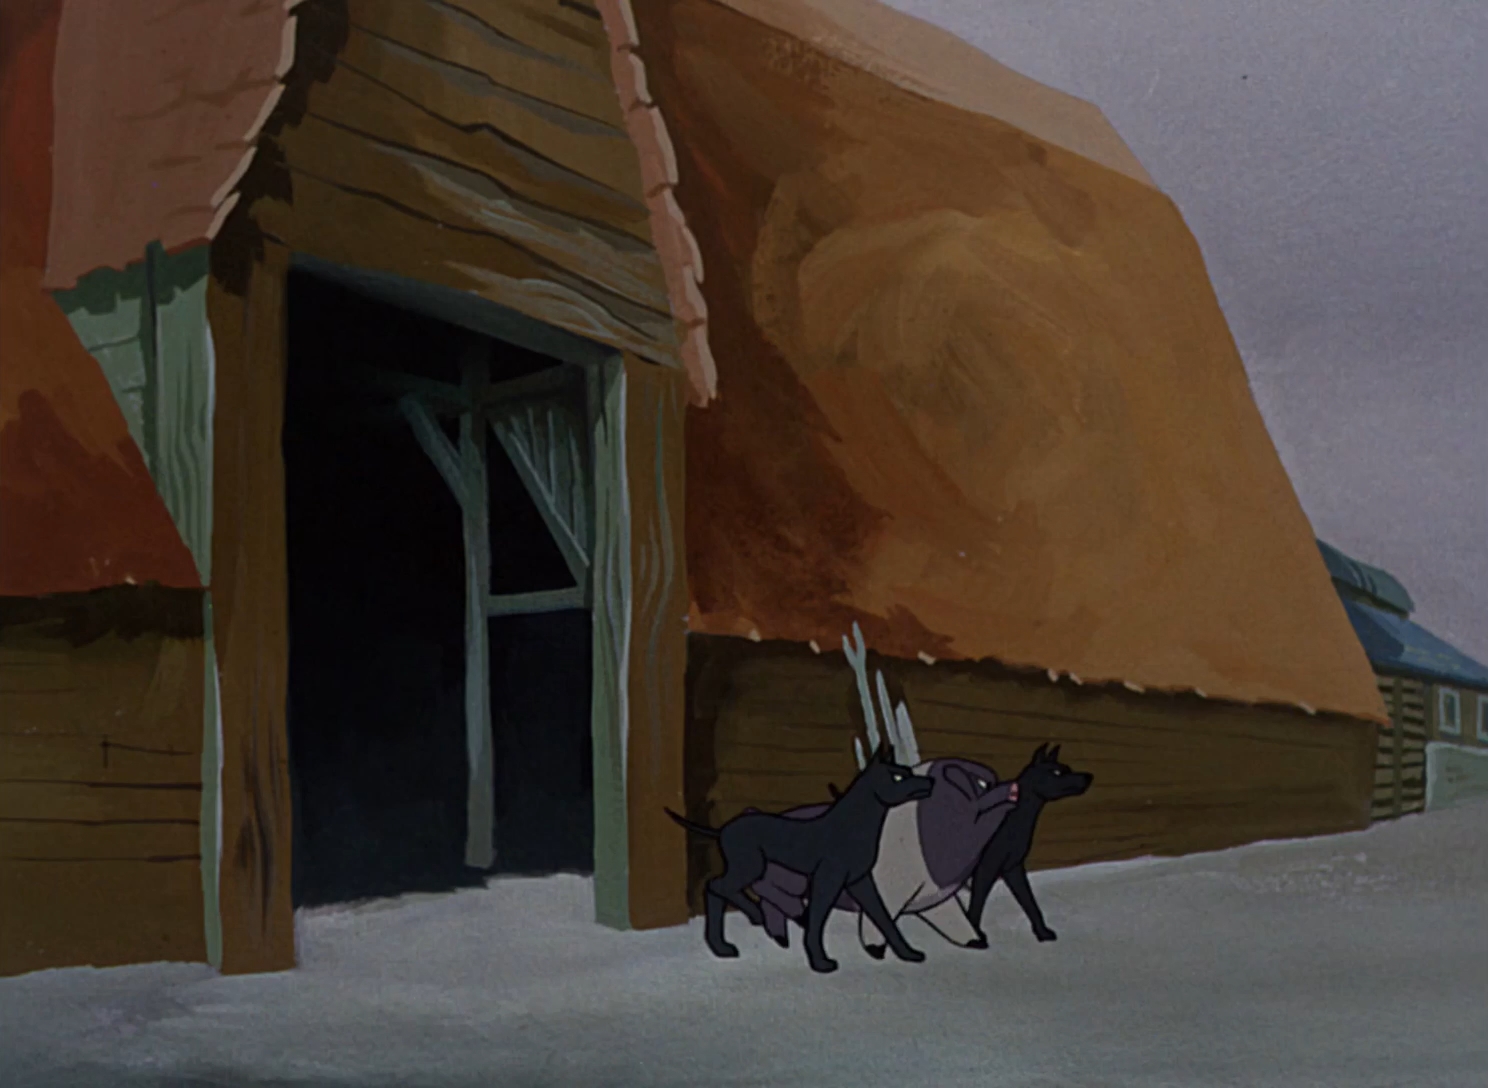 Rebelión en la granja (1954)|1080p|Subtitulado|Mega